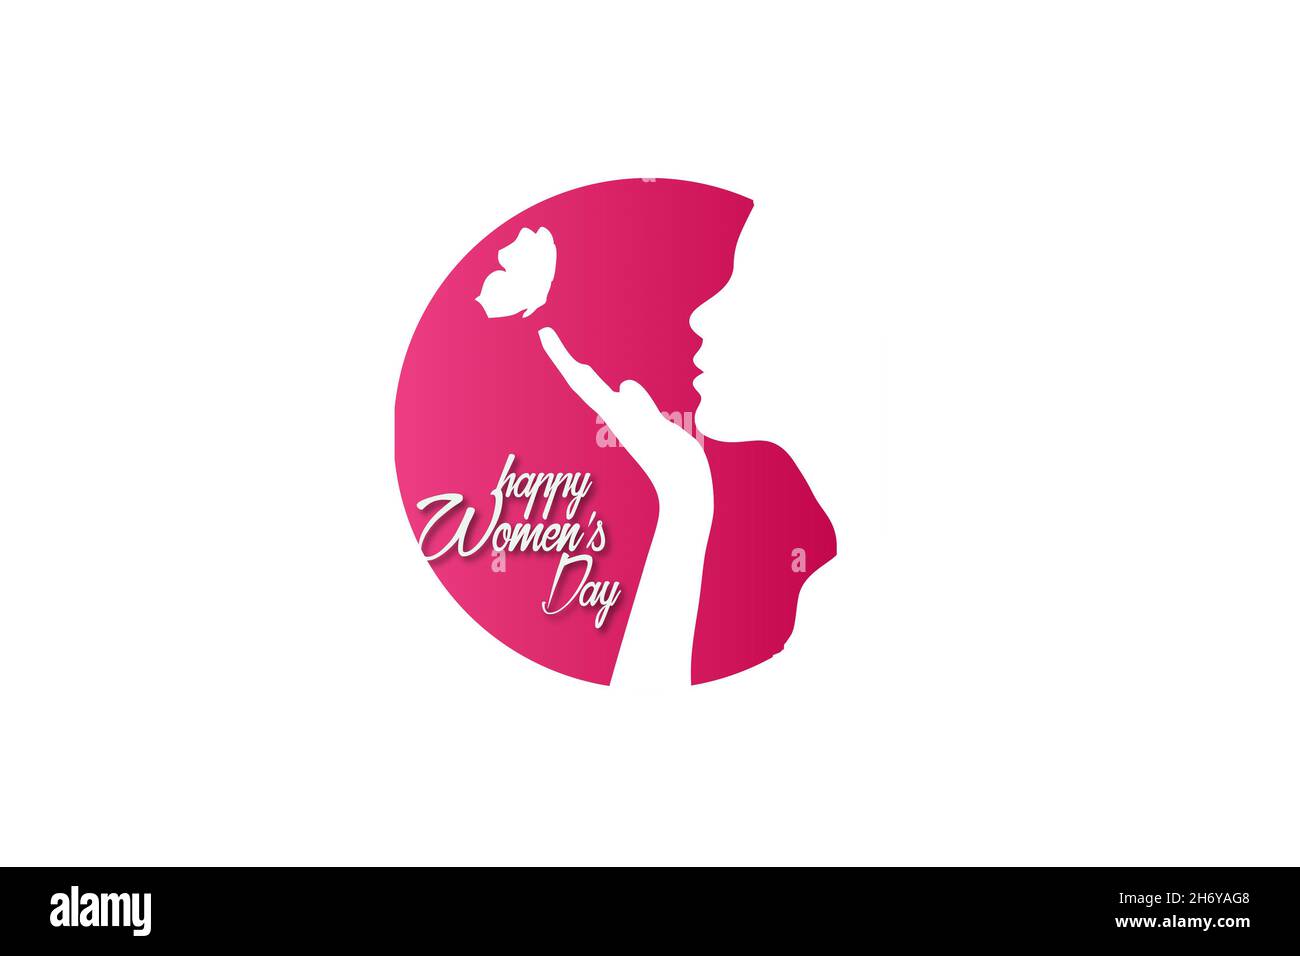 Logo del dia de la mujer fotografías e imágenes de alta resolución - Alamy